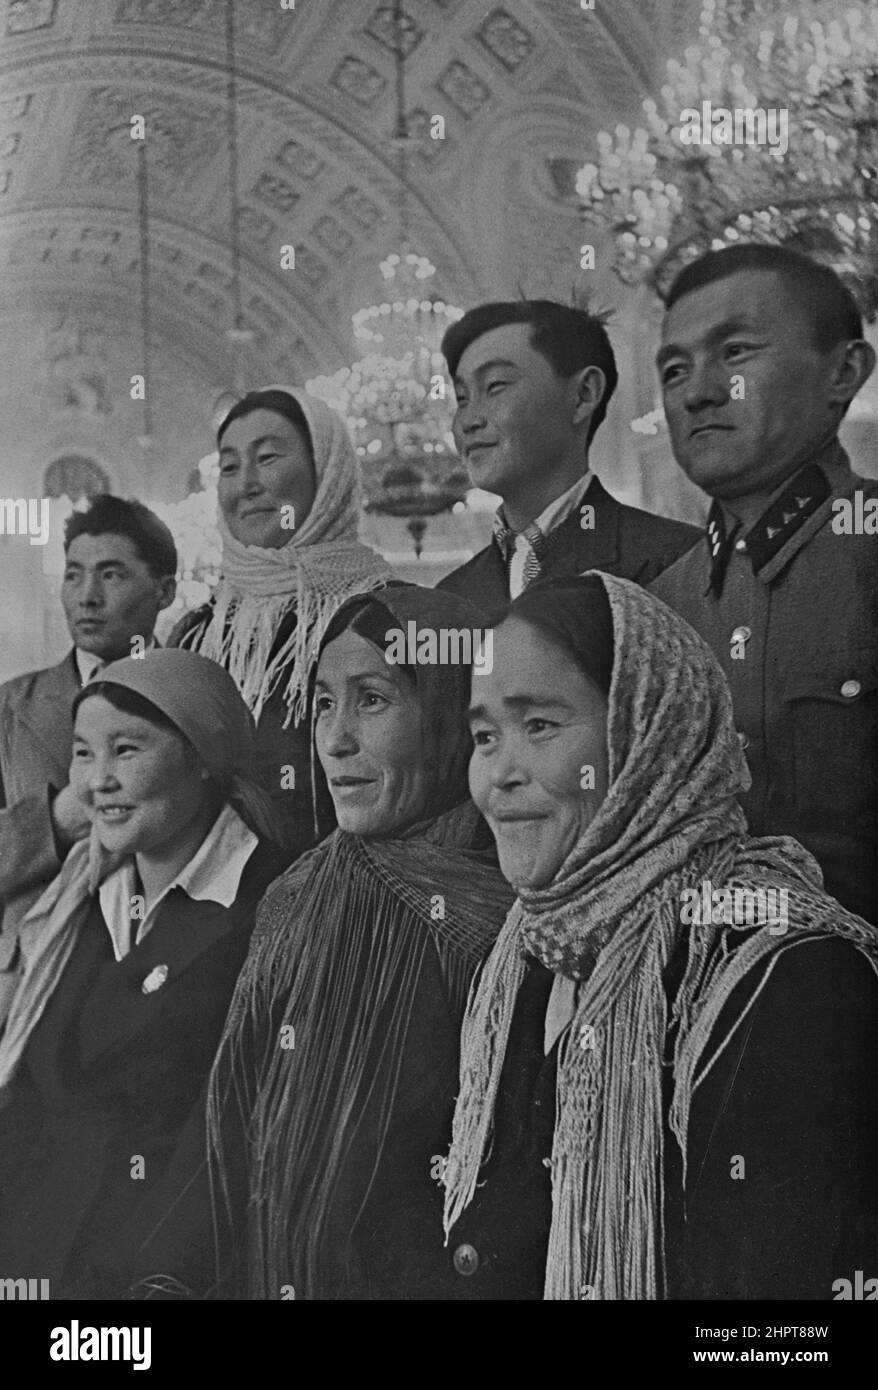 Vintage-Foto der Abgeordneten des Obersten Sowjets im Kreml. Moskau. UdSSR (Union der Sozialistischen Sowjetrepubliken). 1930-1940 Stockfoto